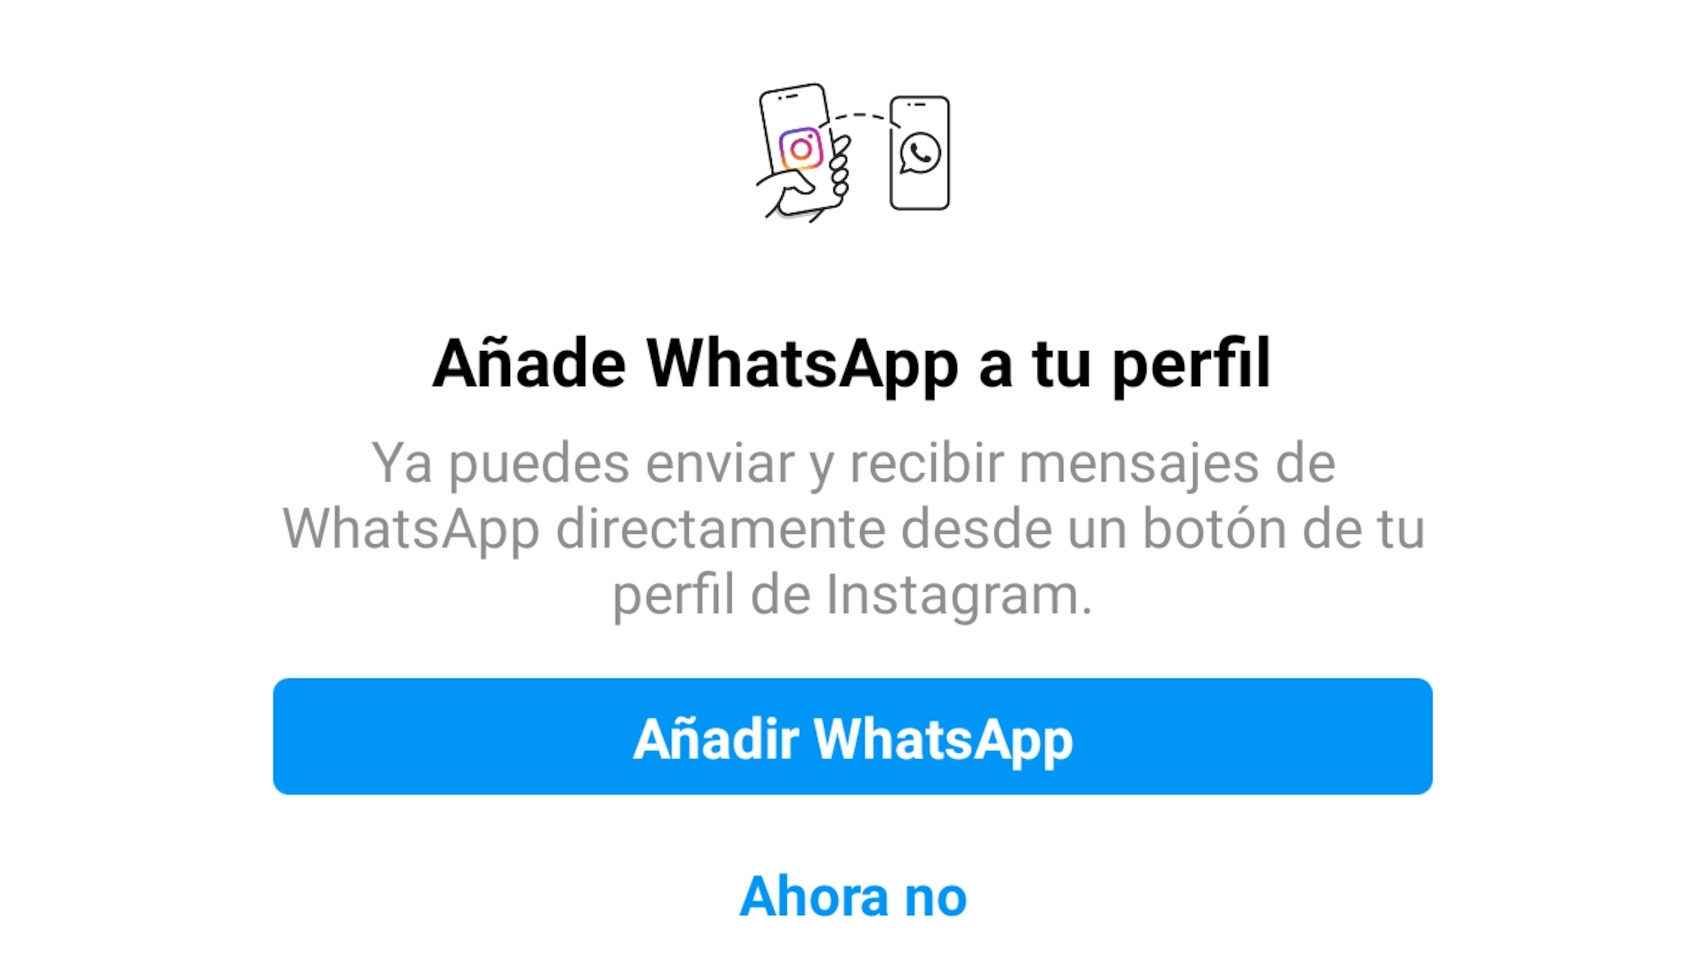 El nuevo mensaje que aparece en Instagram para añadir la cuenta de WhatsApp